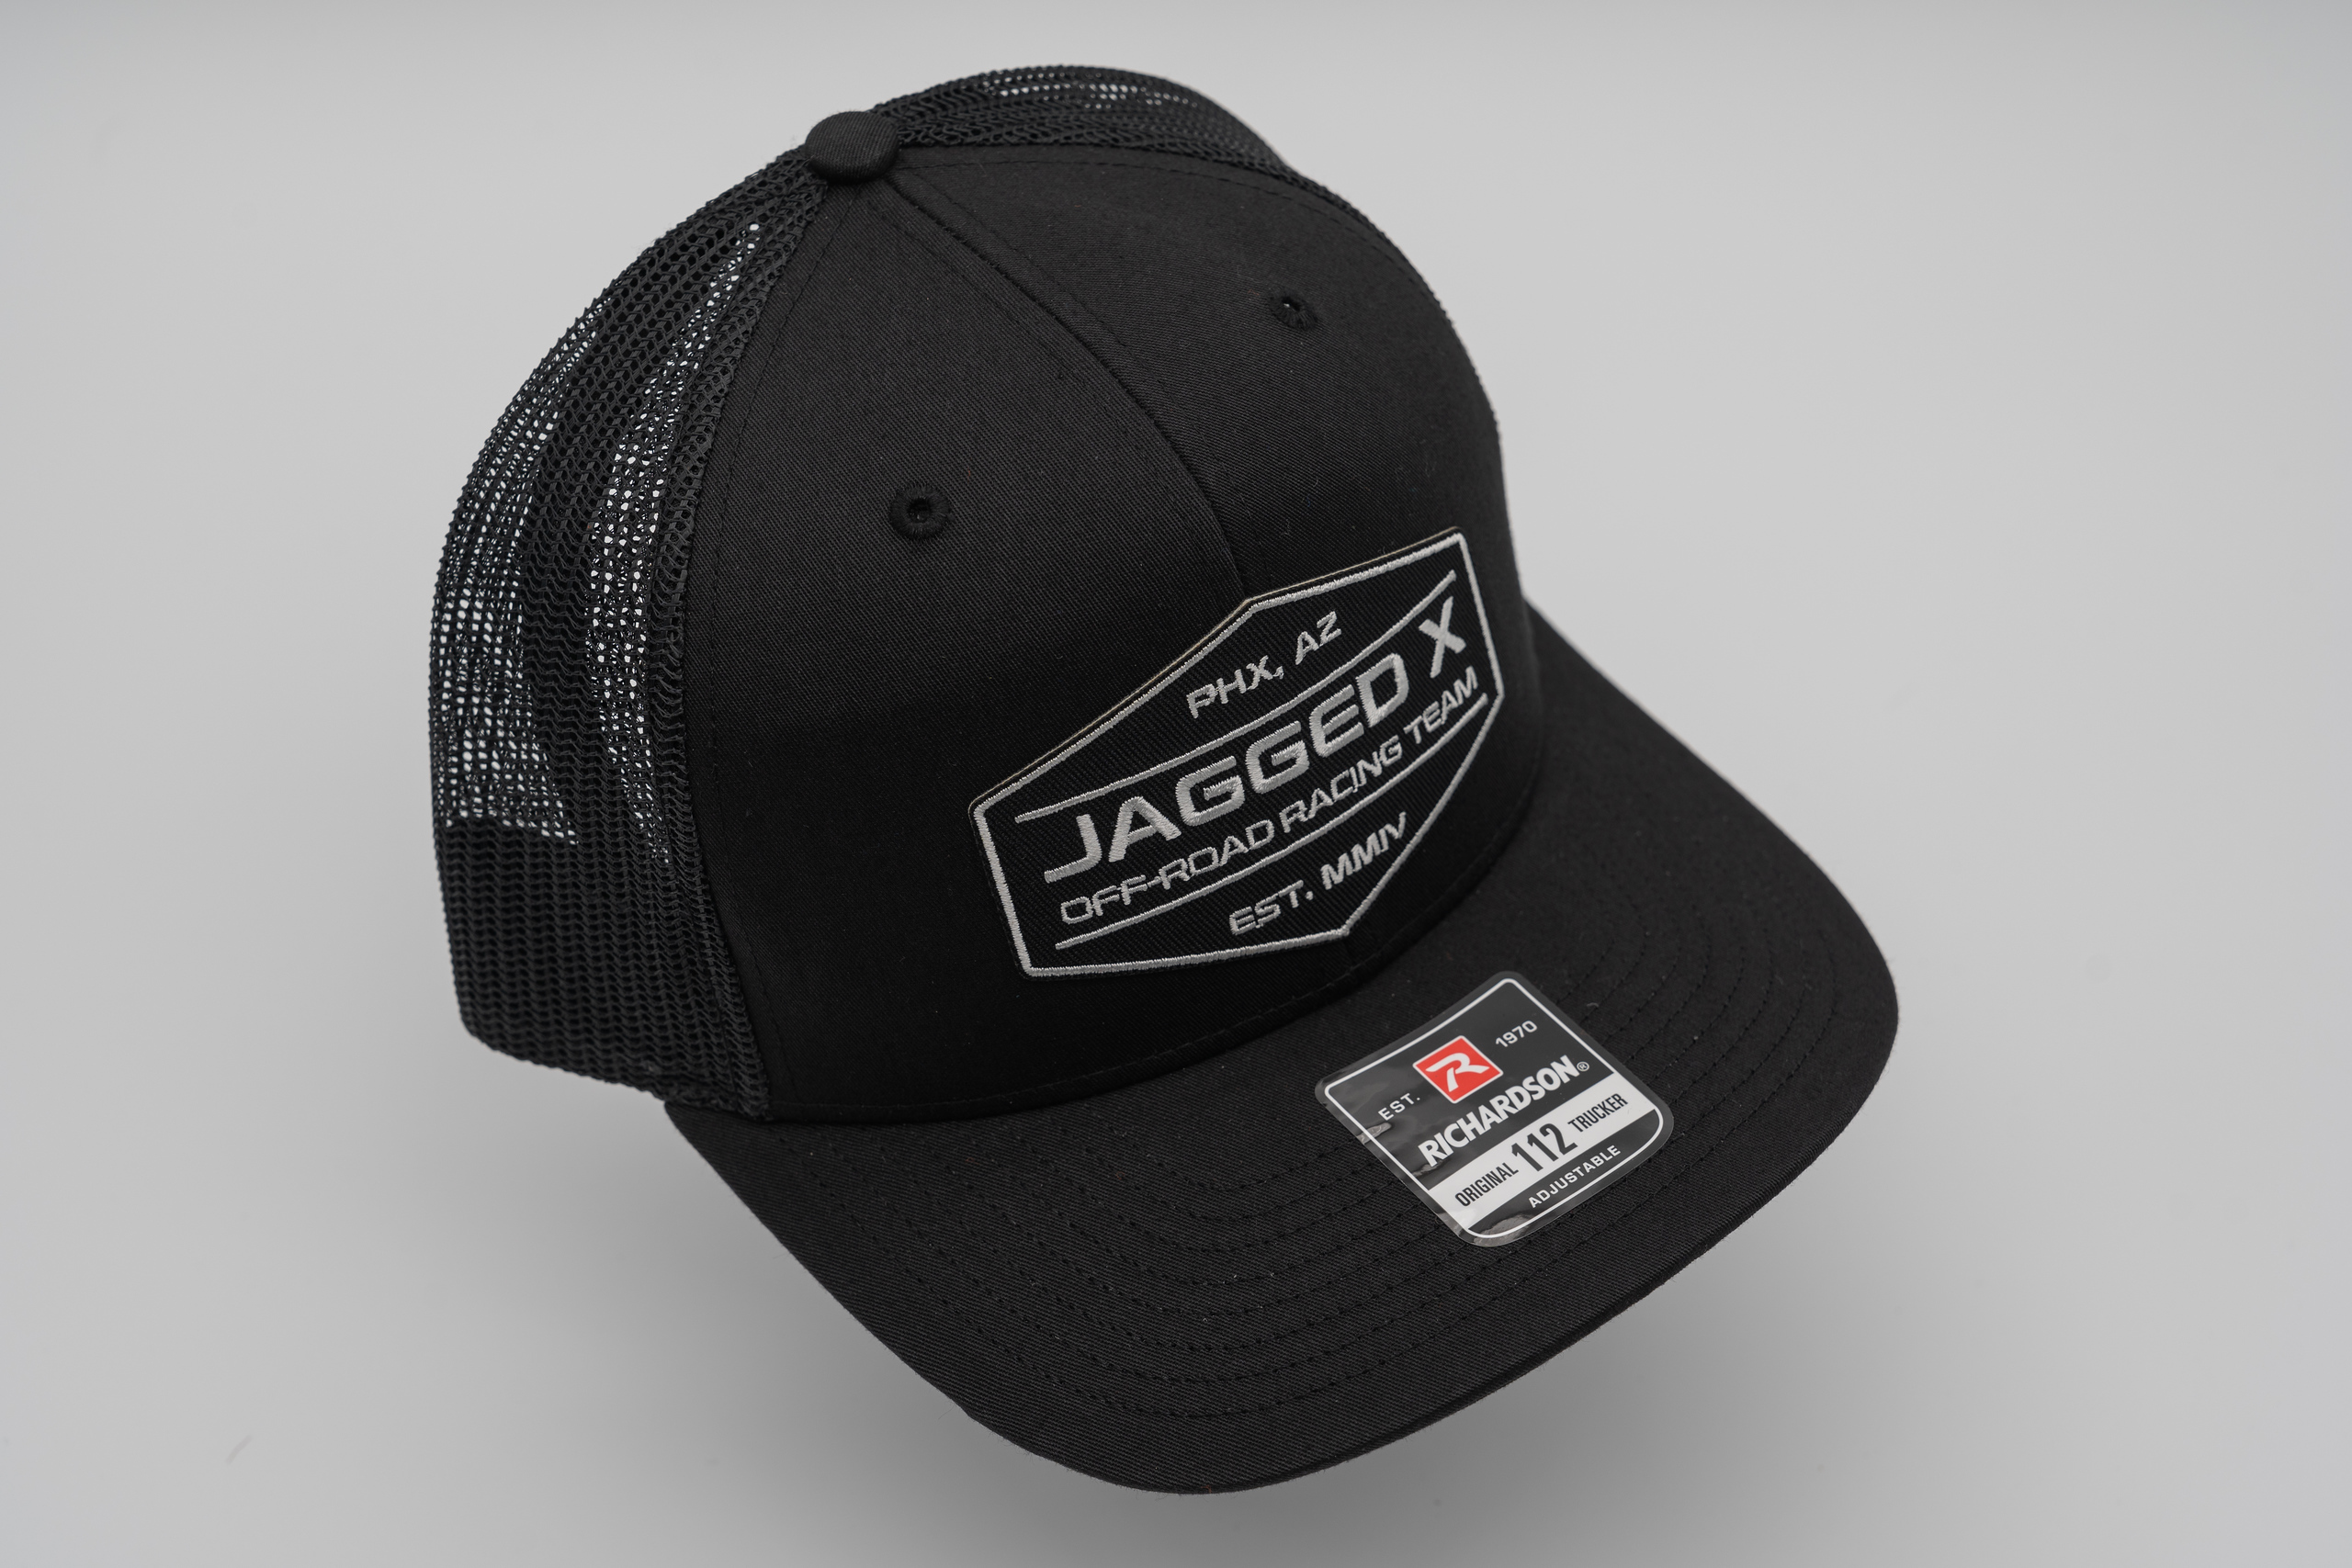 jagged x offroad trucker hat black 4